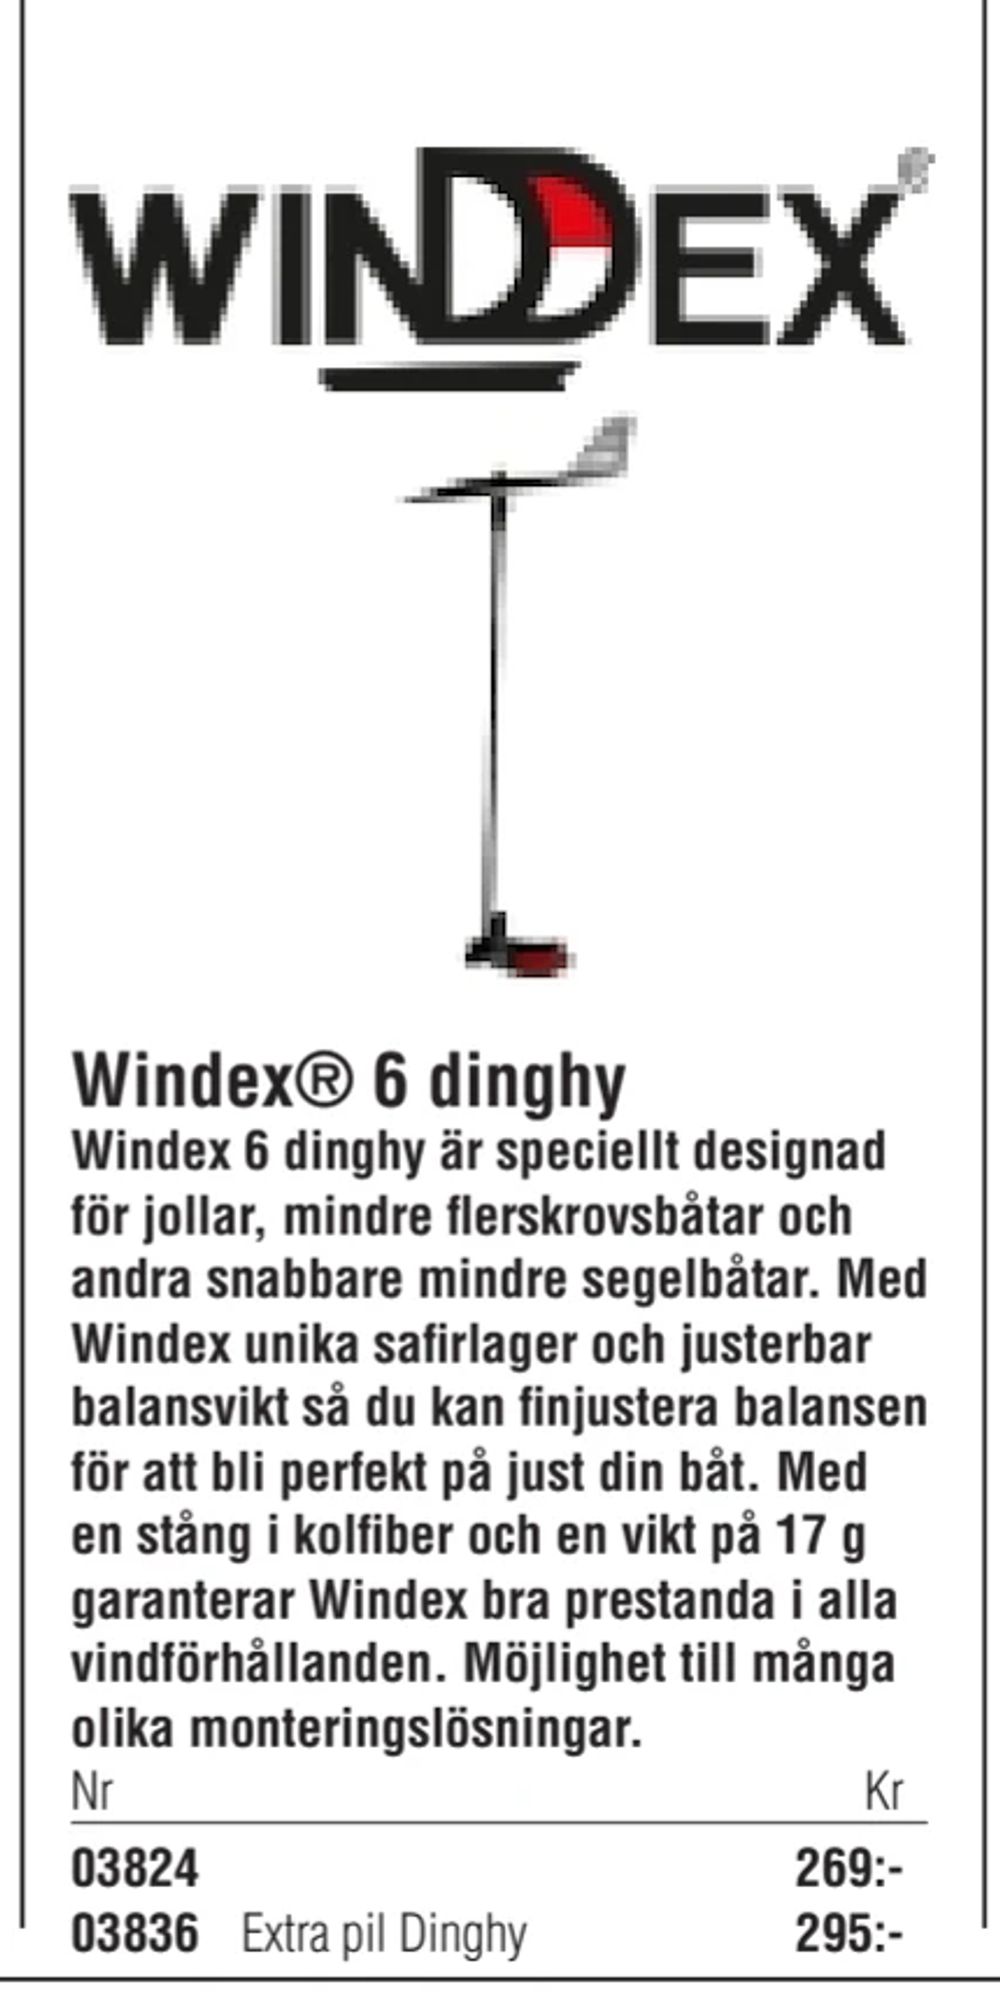 Erbjudanden på Windex® 6 dinghy från Erlandsons Brygga för 269 kr